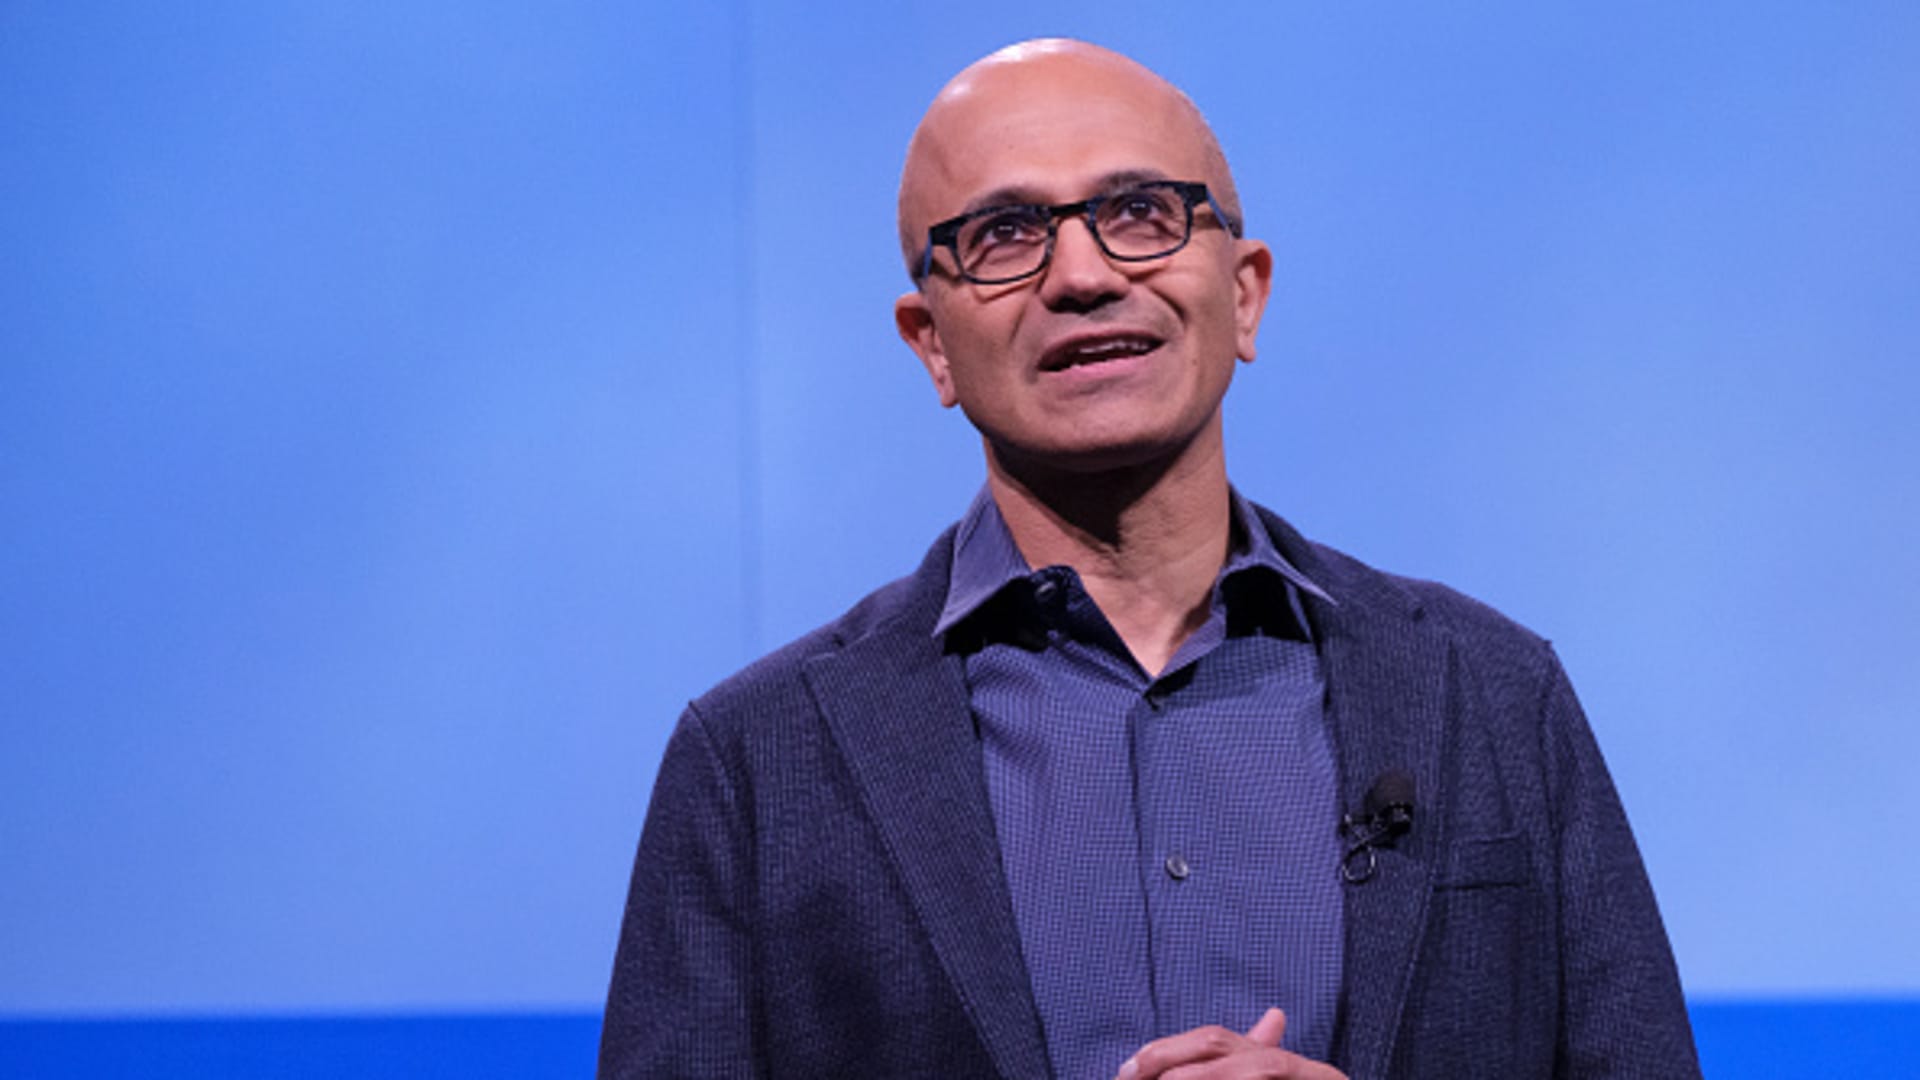 Microsoft CEO Satya Nadella says employees’ salary increases are coming